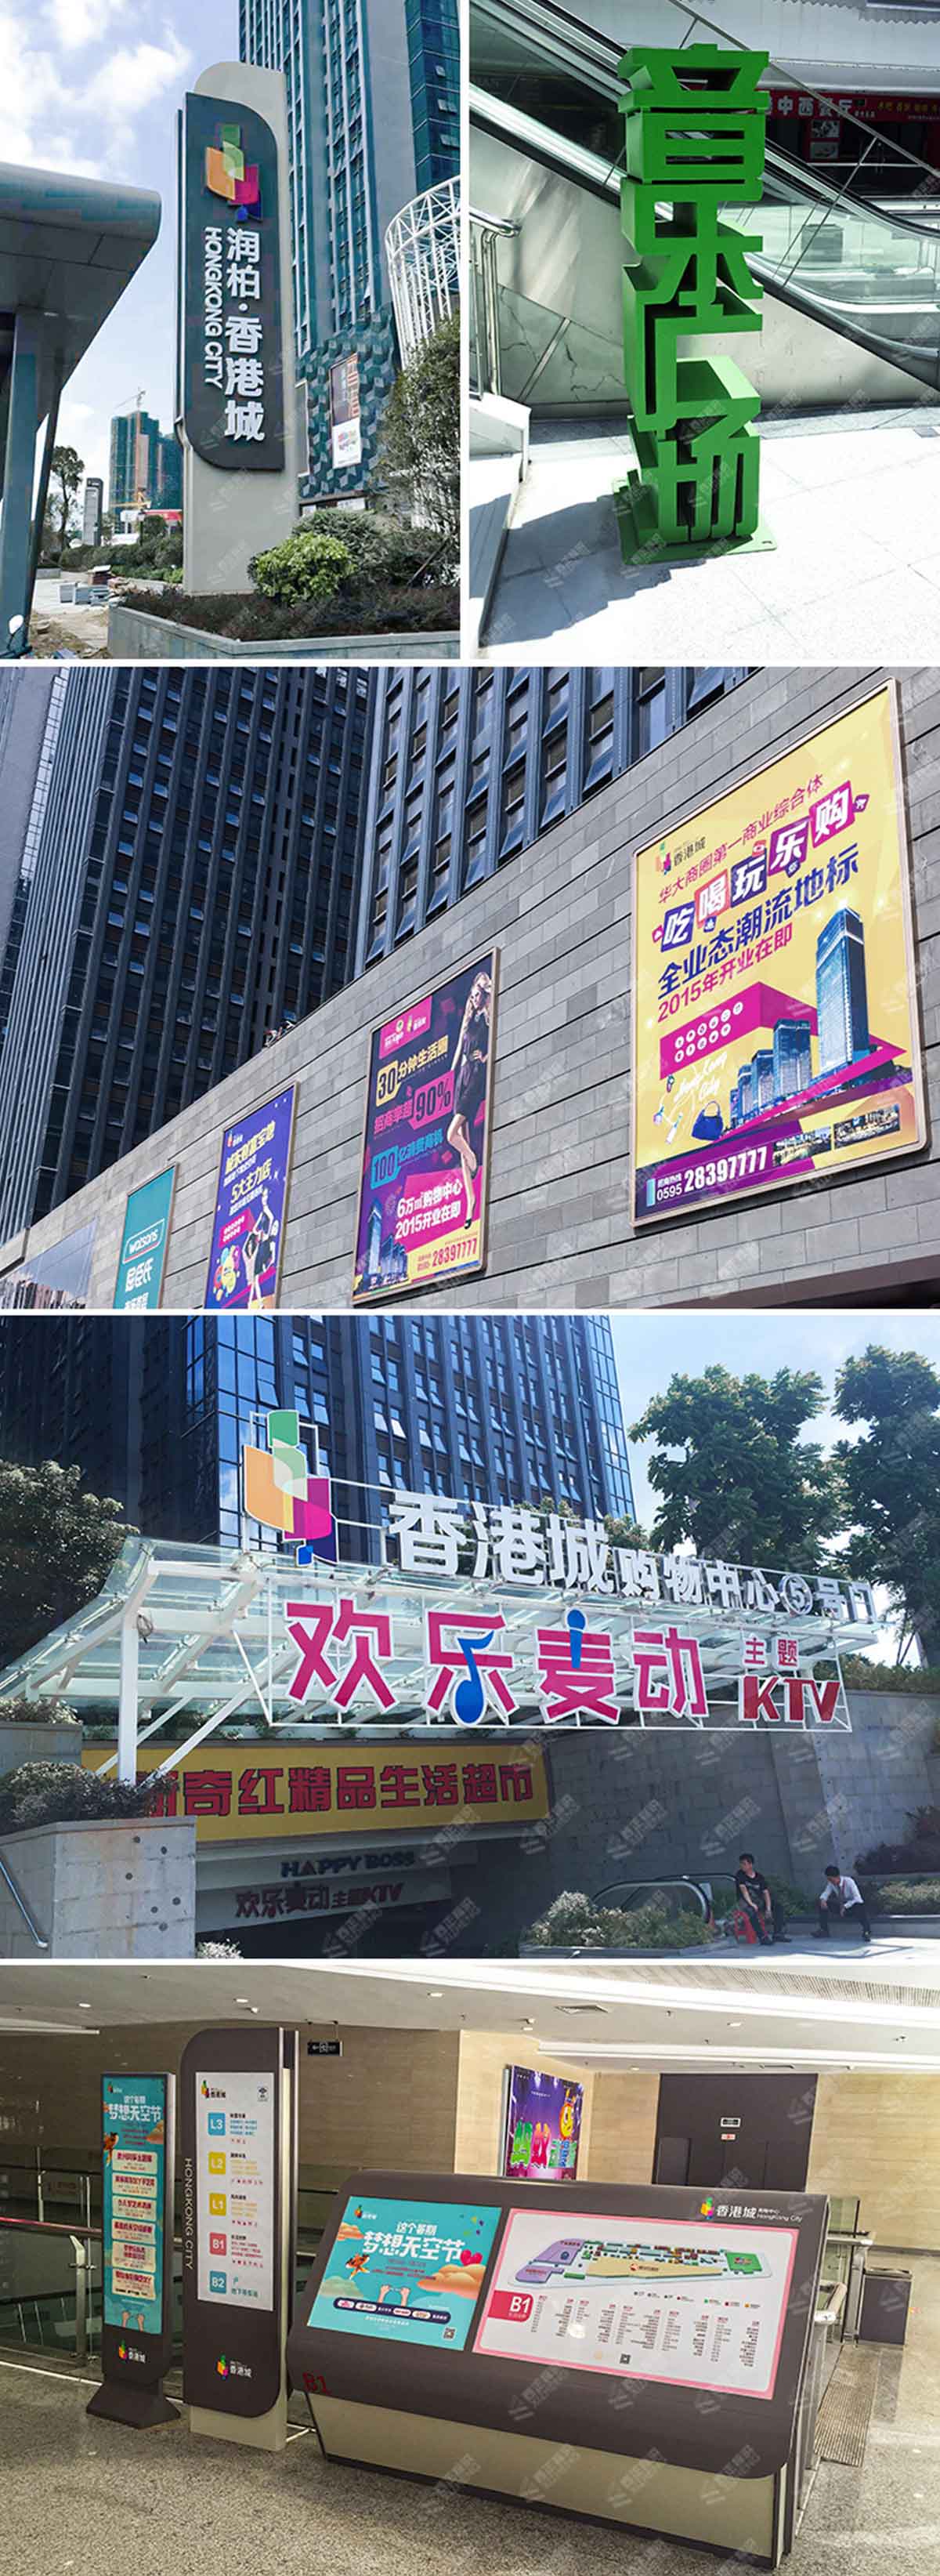 润柏·香港城标识导视系统